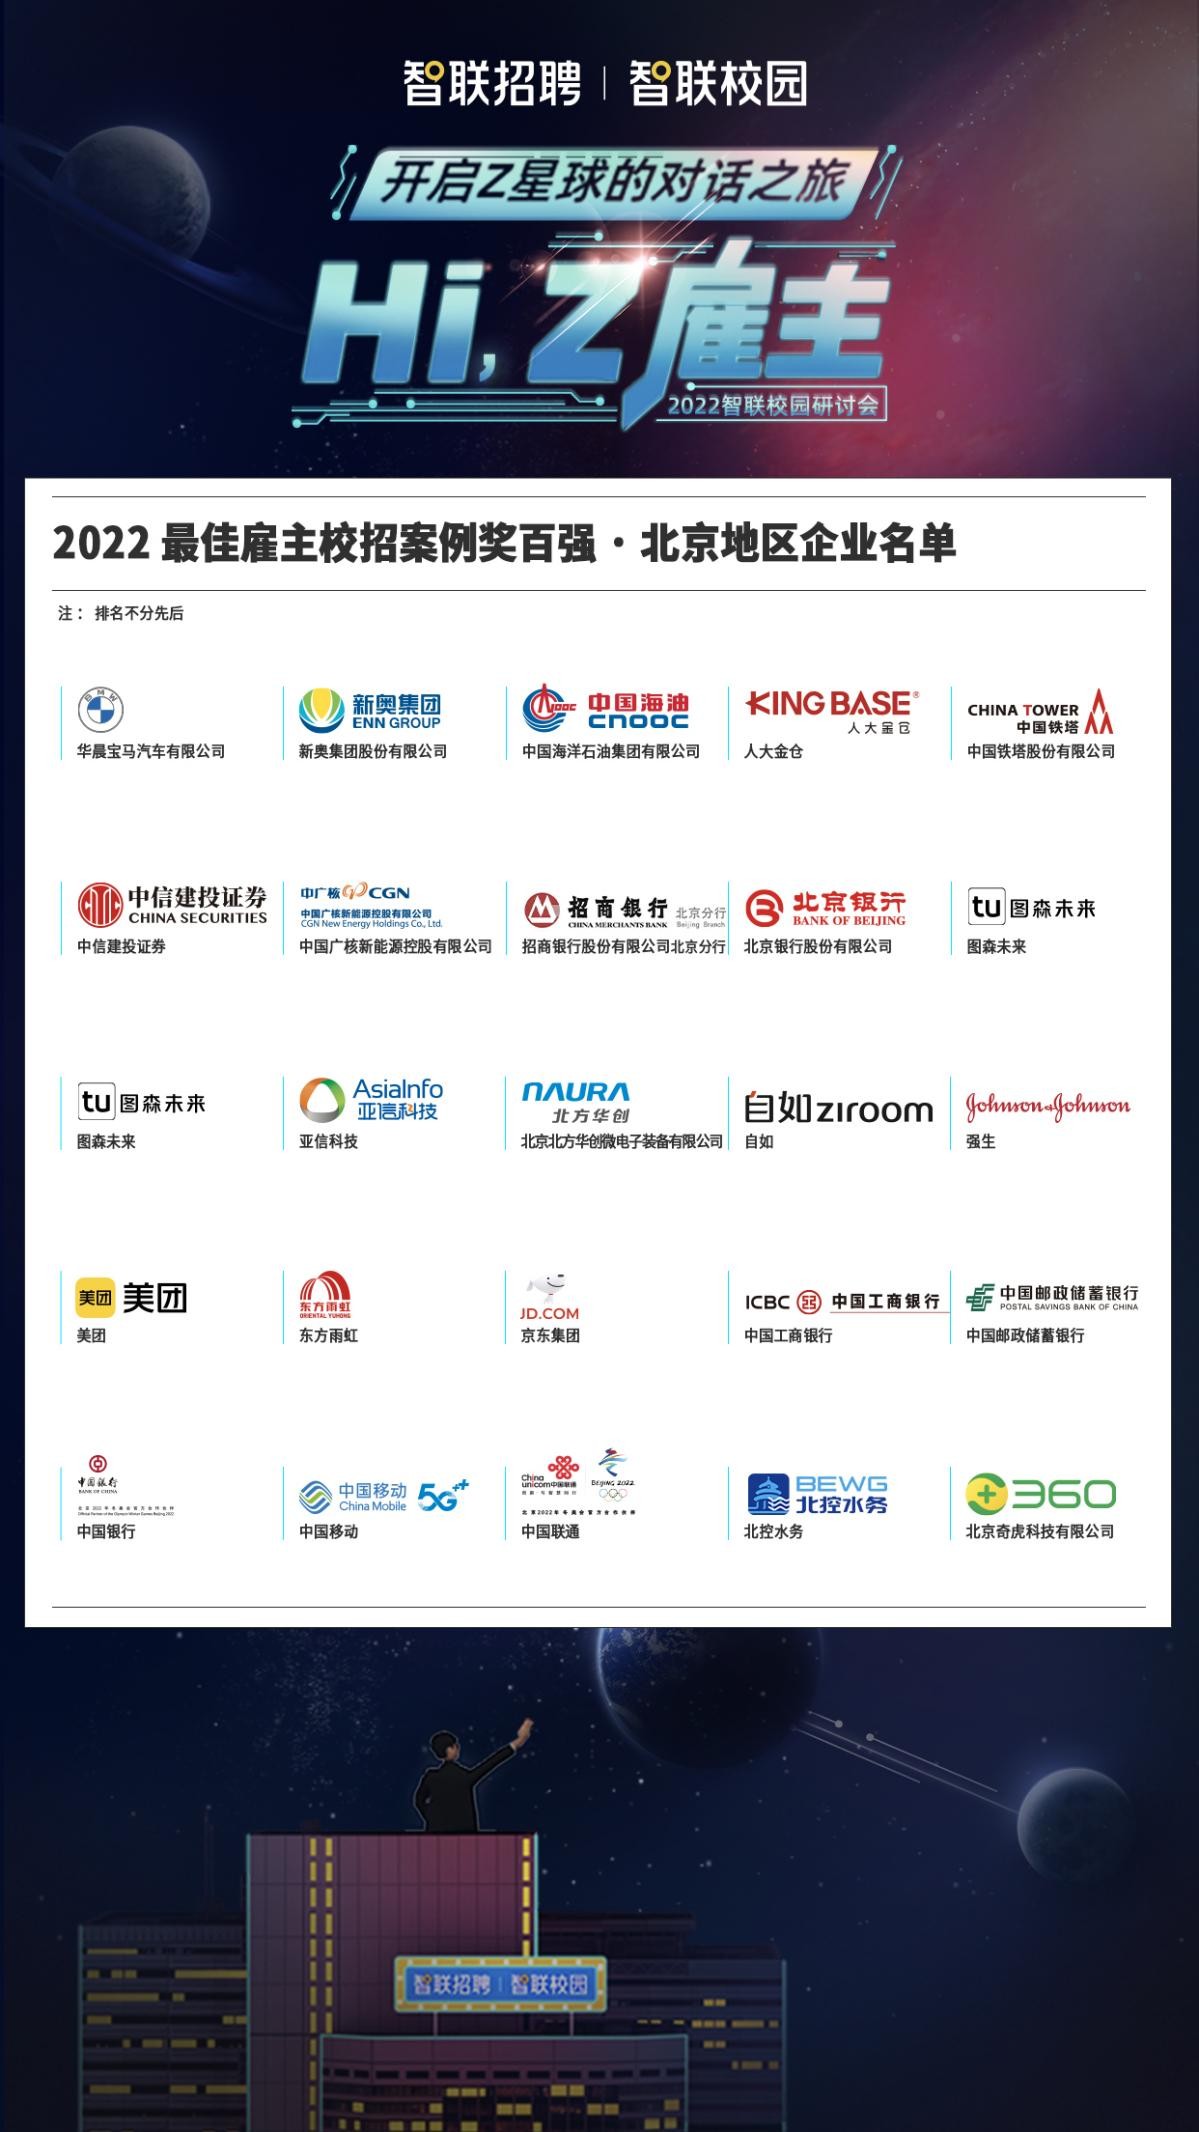 2022年智联招聘校园空中研讨会·北京站完美落幕！